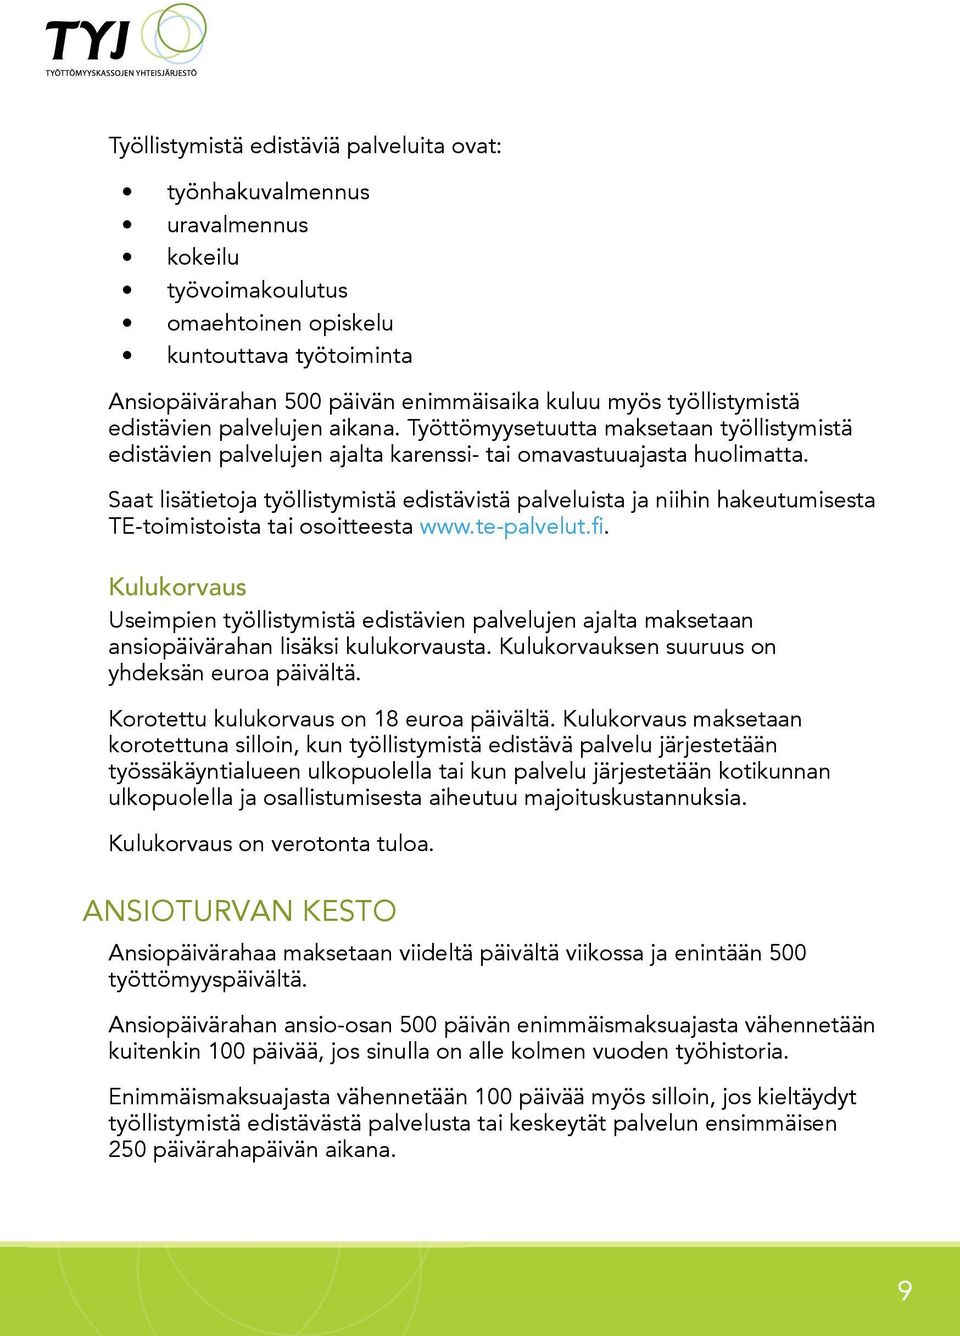 Saat lisätietoja työllistymistä edistävistä palveluista ja niihin hakeutumisesta TE-toimistoista tai osoitteesta www.te-palvelut.fi.